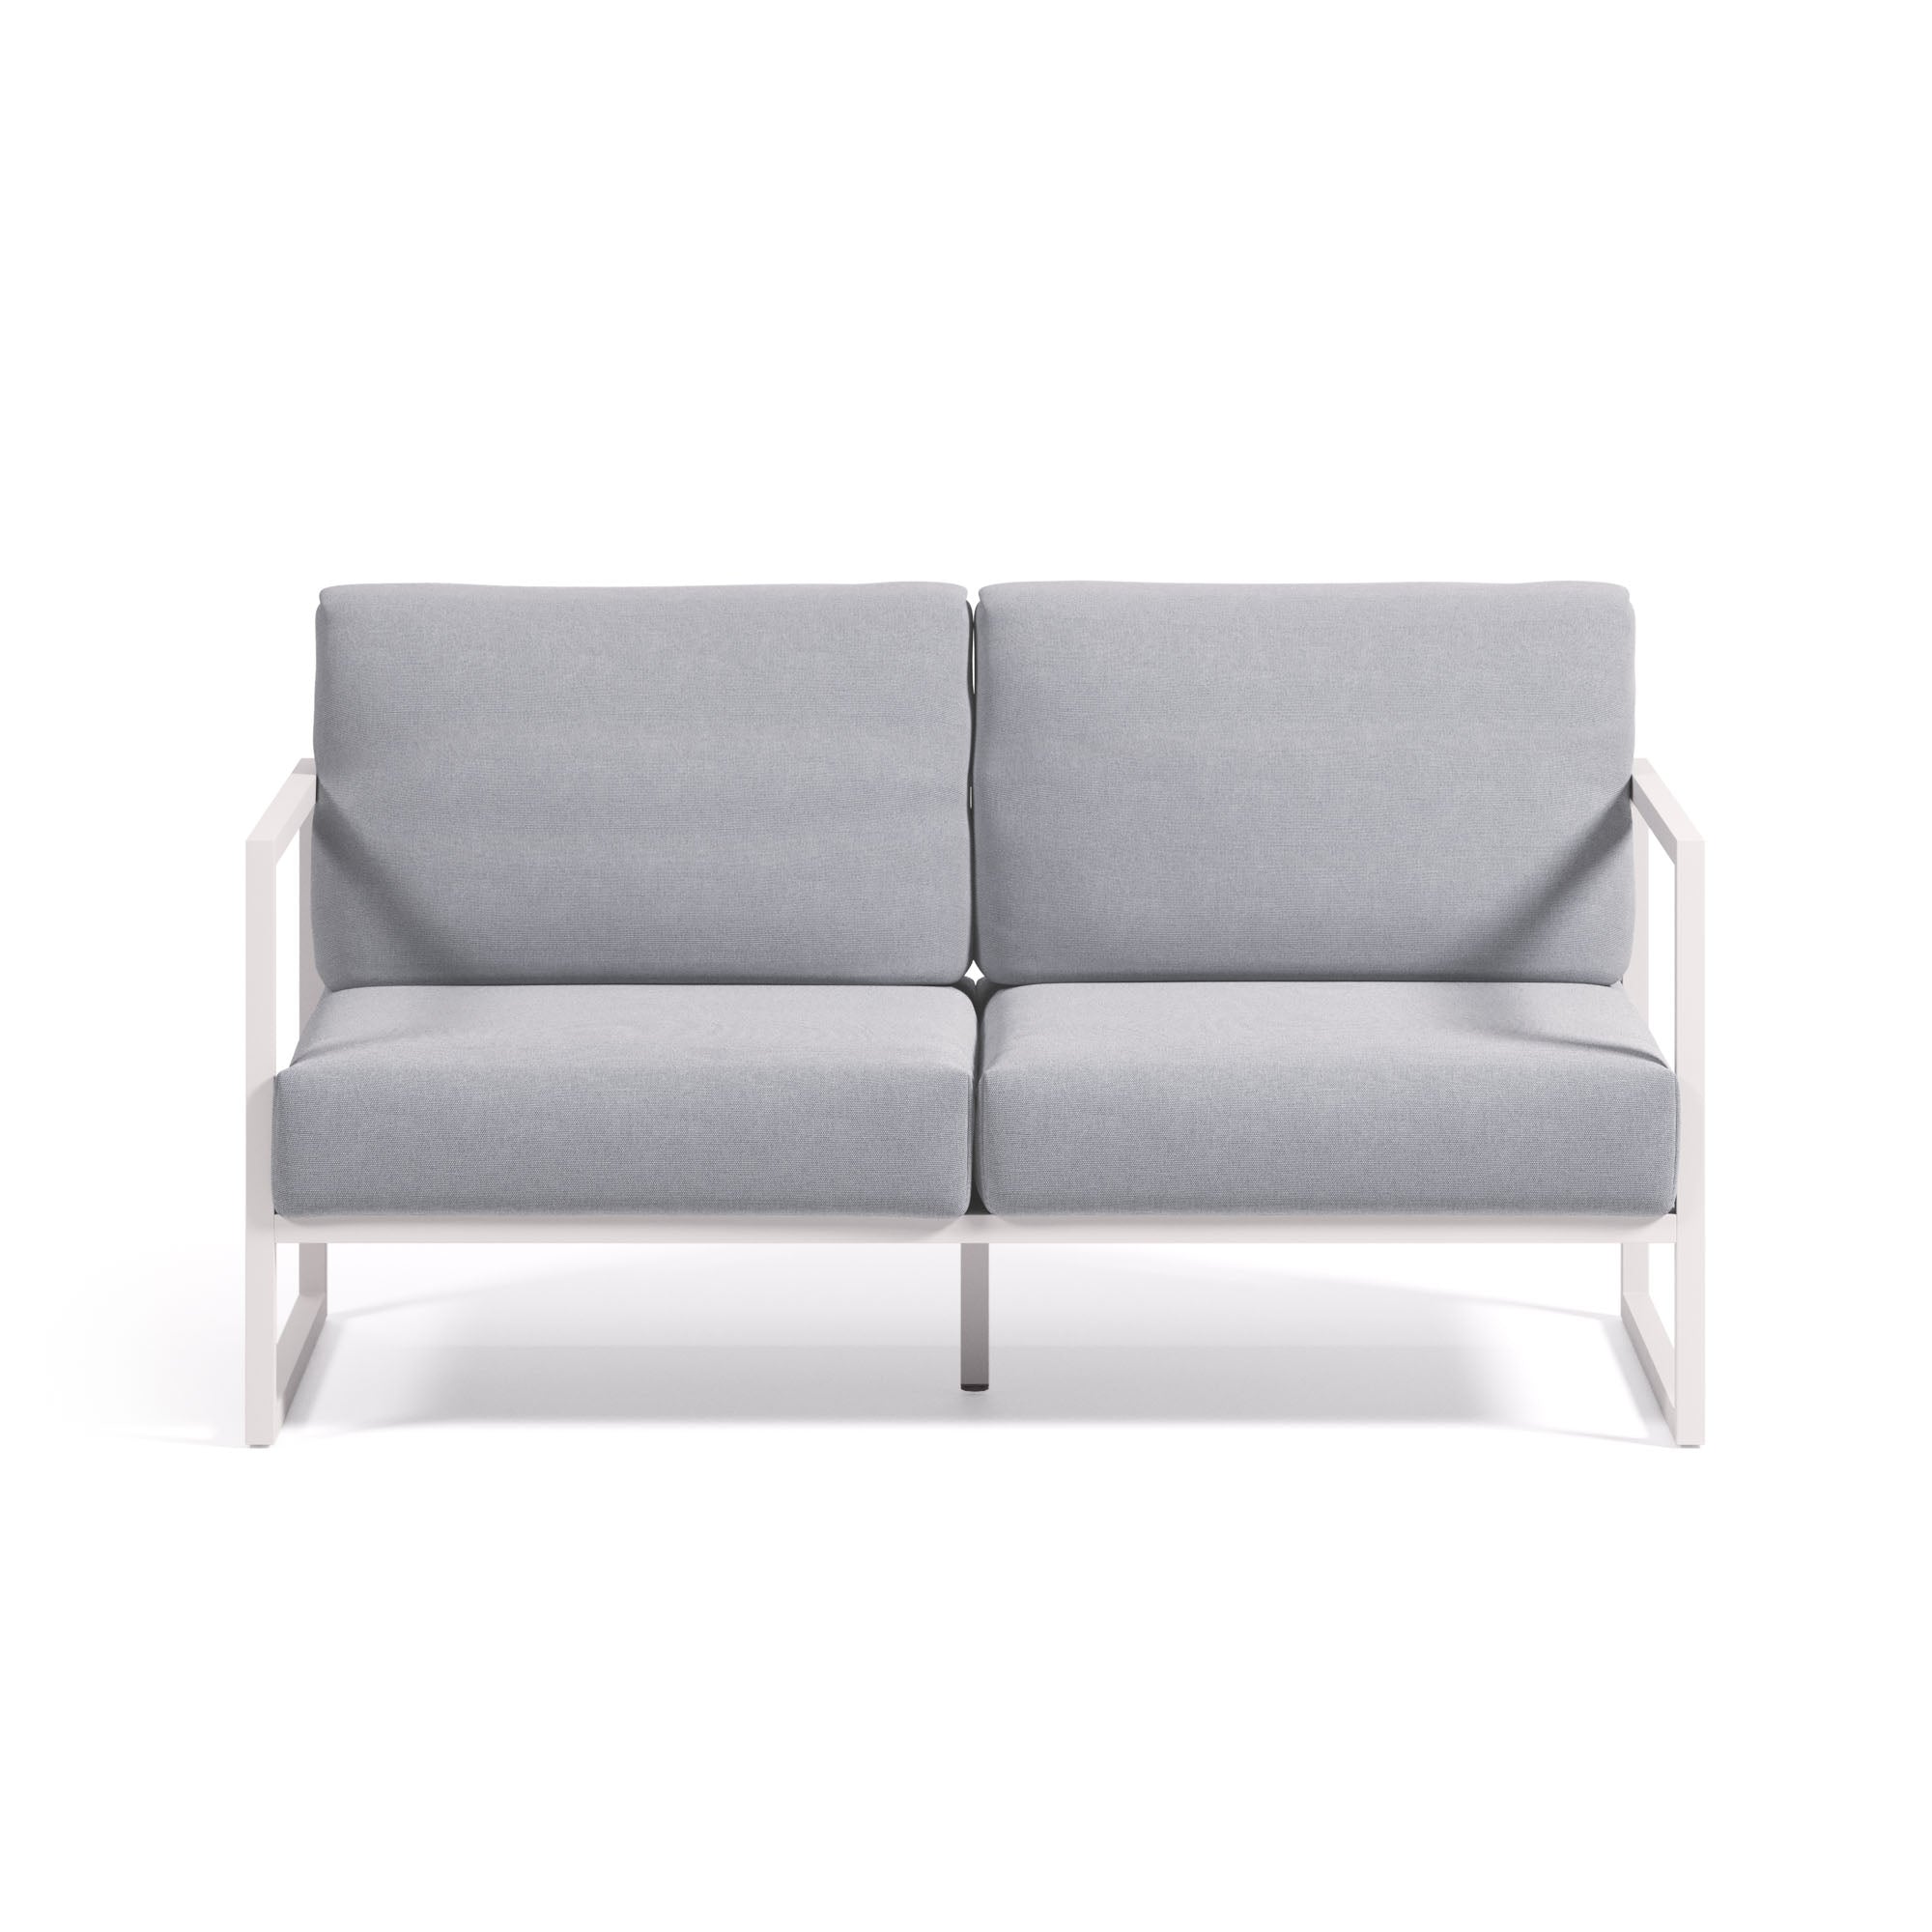 Comova 100% kültéri 2 személyes kanapé kék és fehér alumíniumból, 150 cm